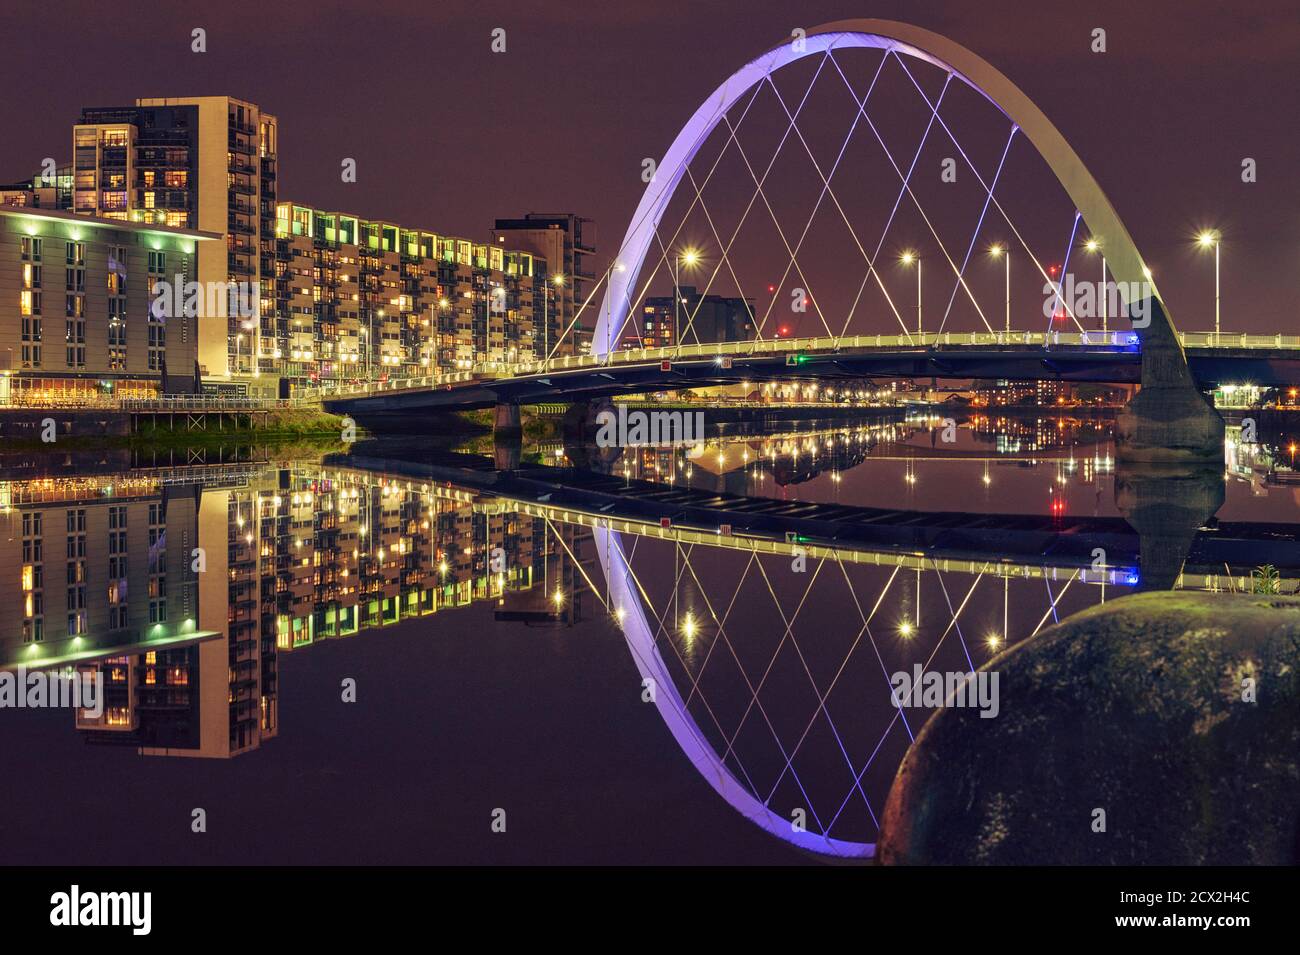 Die zeitgenössische moderne Architektur in Glasgow spiegelt sich im Fluss wider Clyde in einer klaren ruhigen Nacht Stockfoto